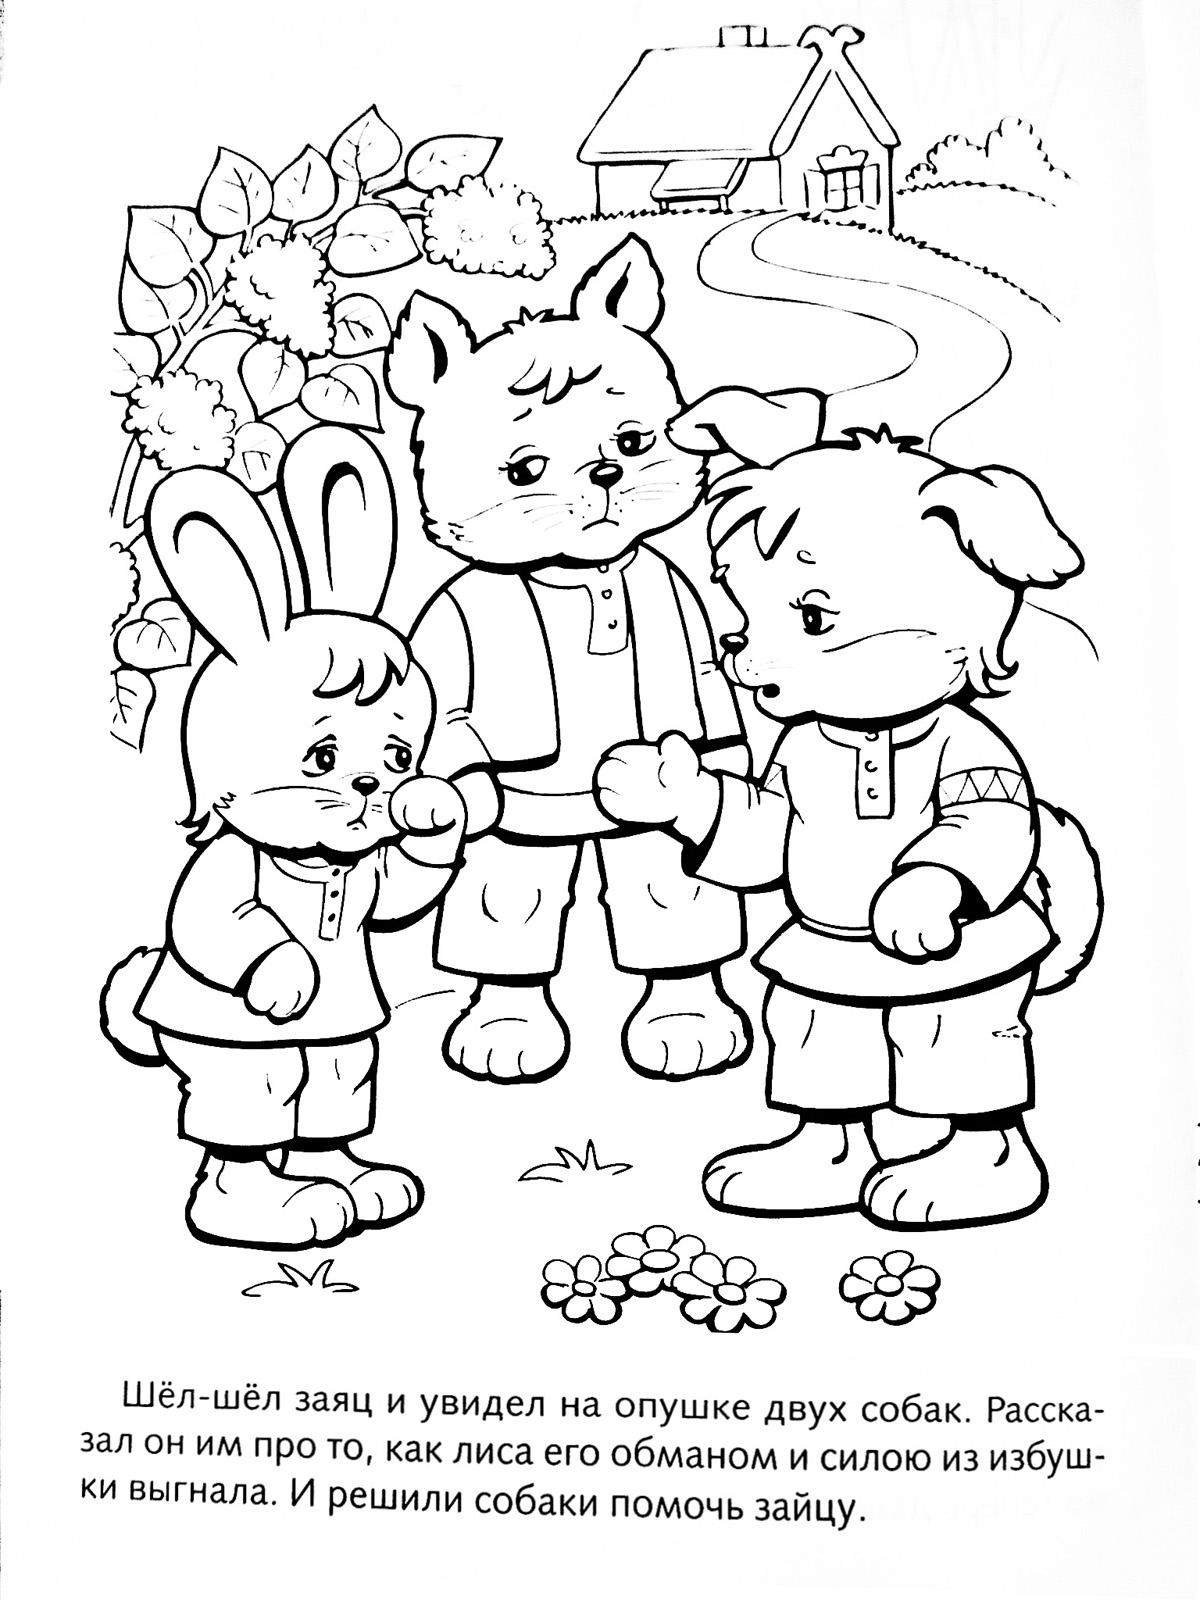 Раскраски раскраски для детей по сказкам Шёл-шел заяц и увидел на опушке двух собак. Рассказал он им про то, как лиса его обманоом и силою из избушки выгнала. И решили собаки помочь зайцу.